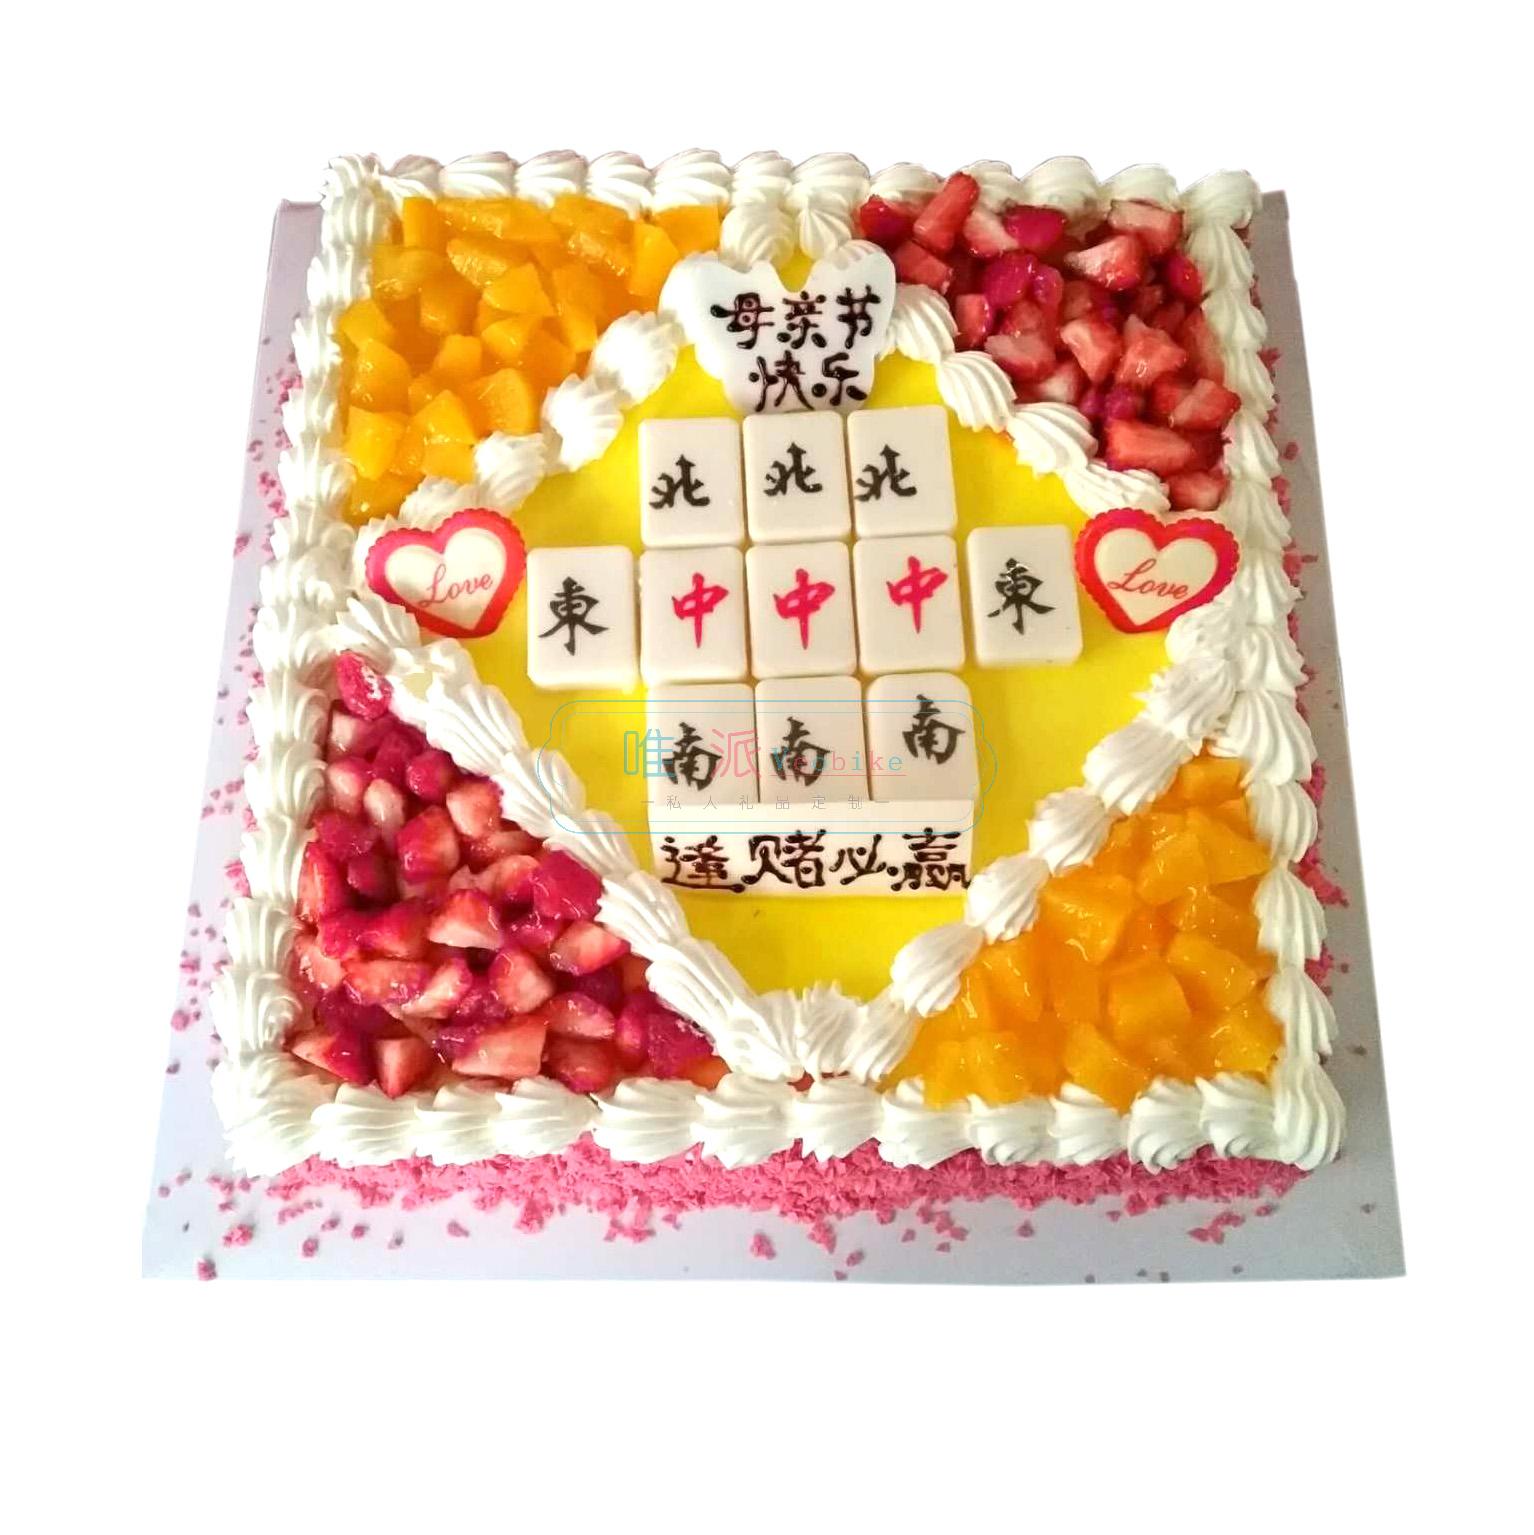 Violette's Patisserie: Mahjong Cake (麻將蛋糕)